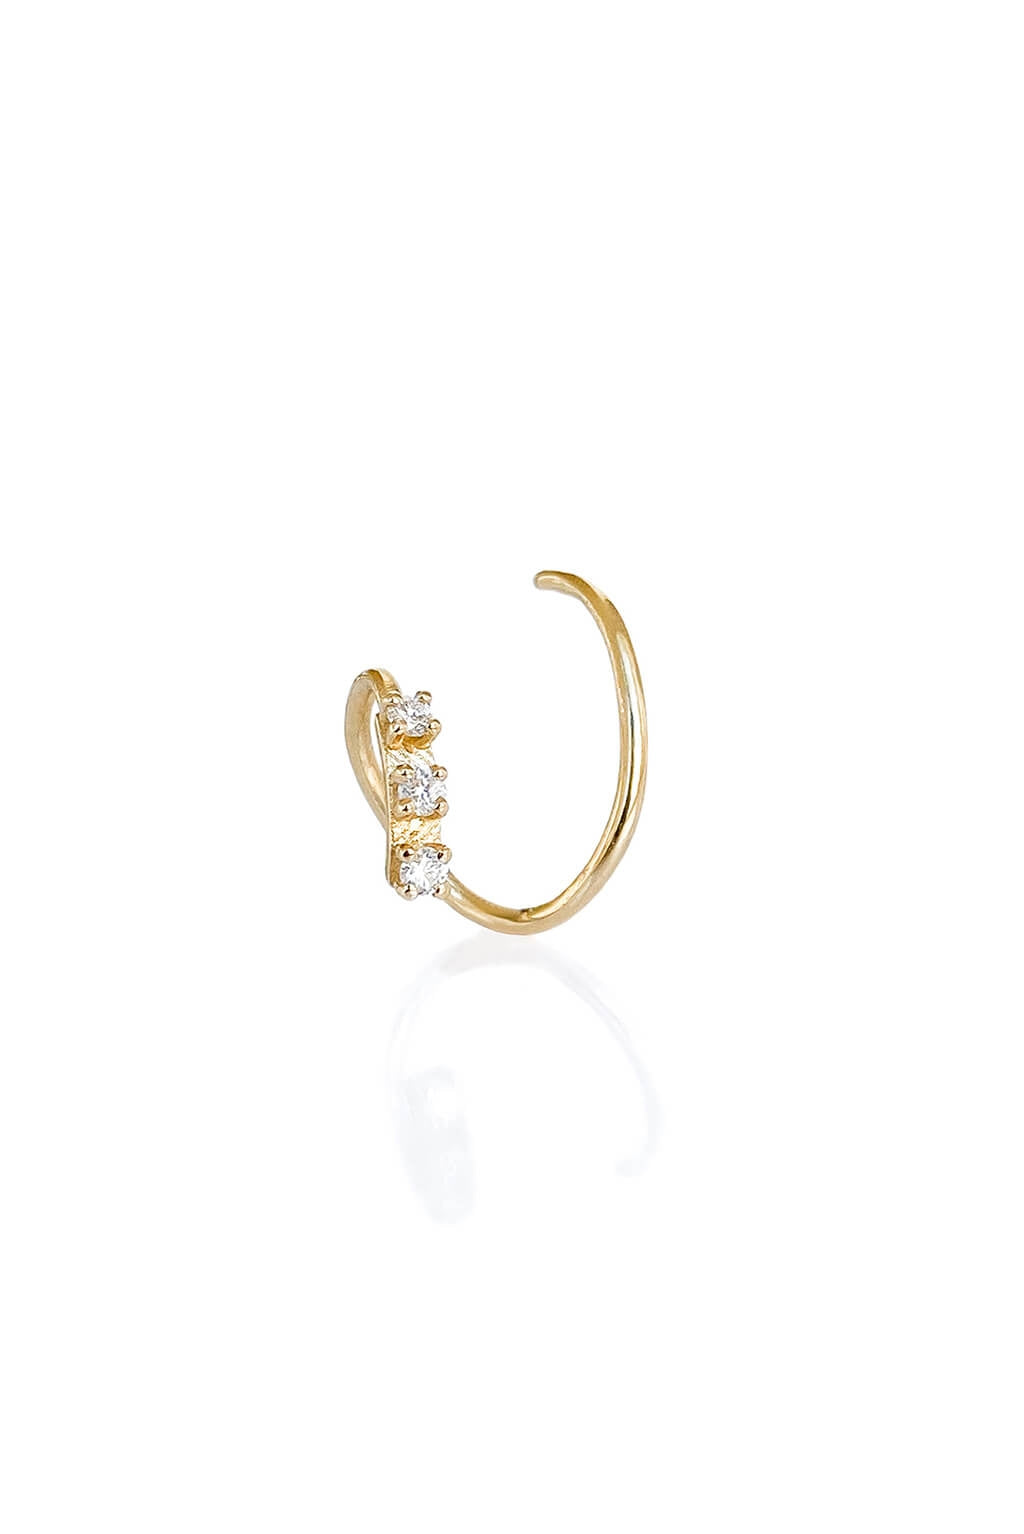 Sansoeurs Triple Tag Snake earring twirl 18k gold diamonds